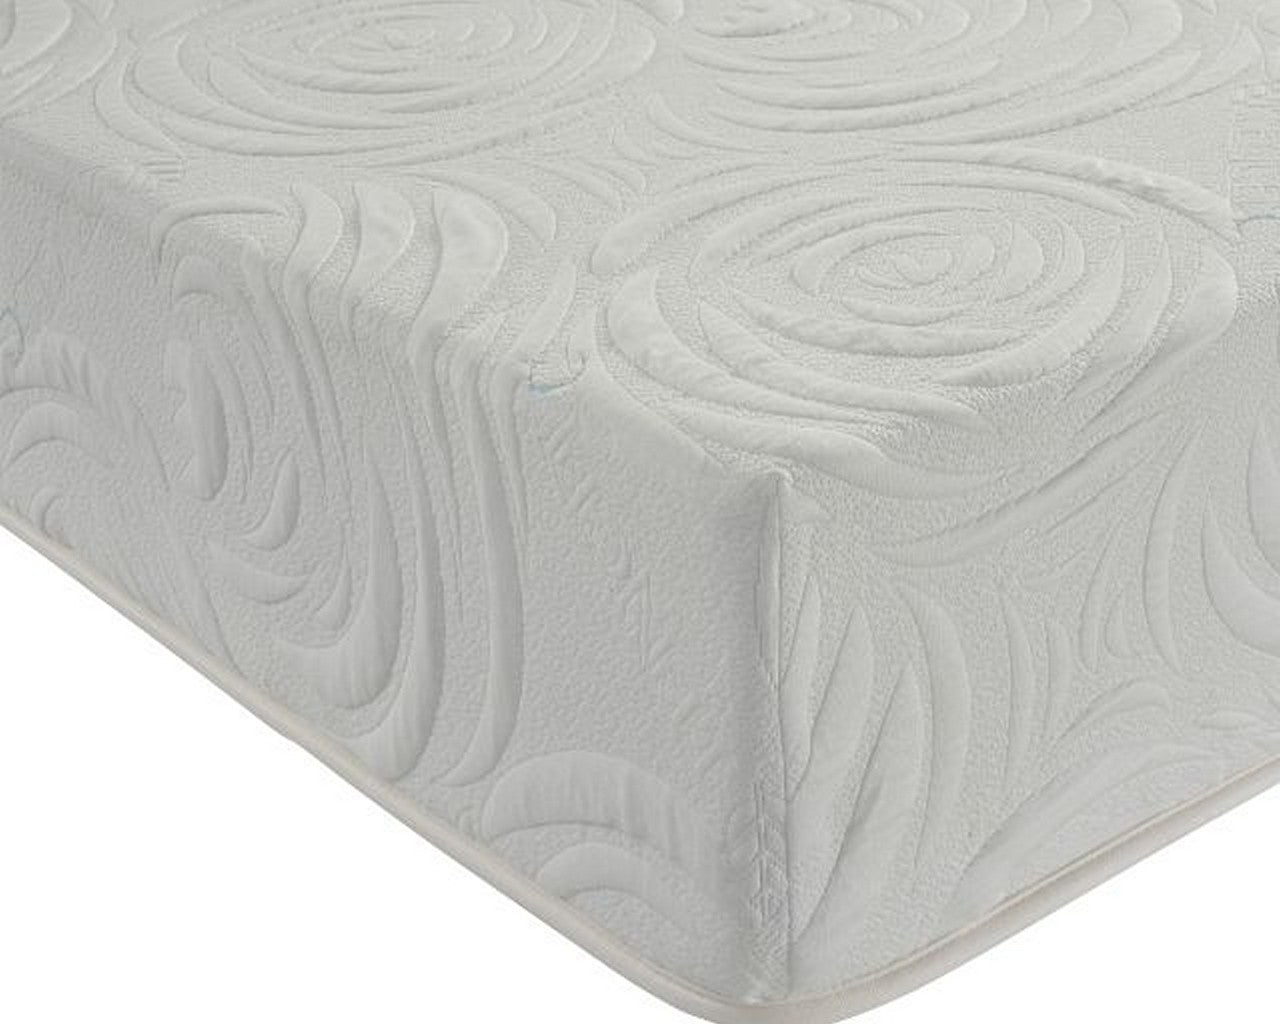 latex-air-mattress - 1